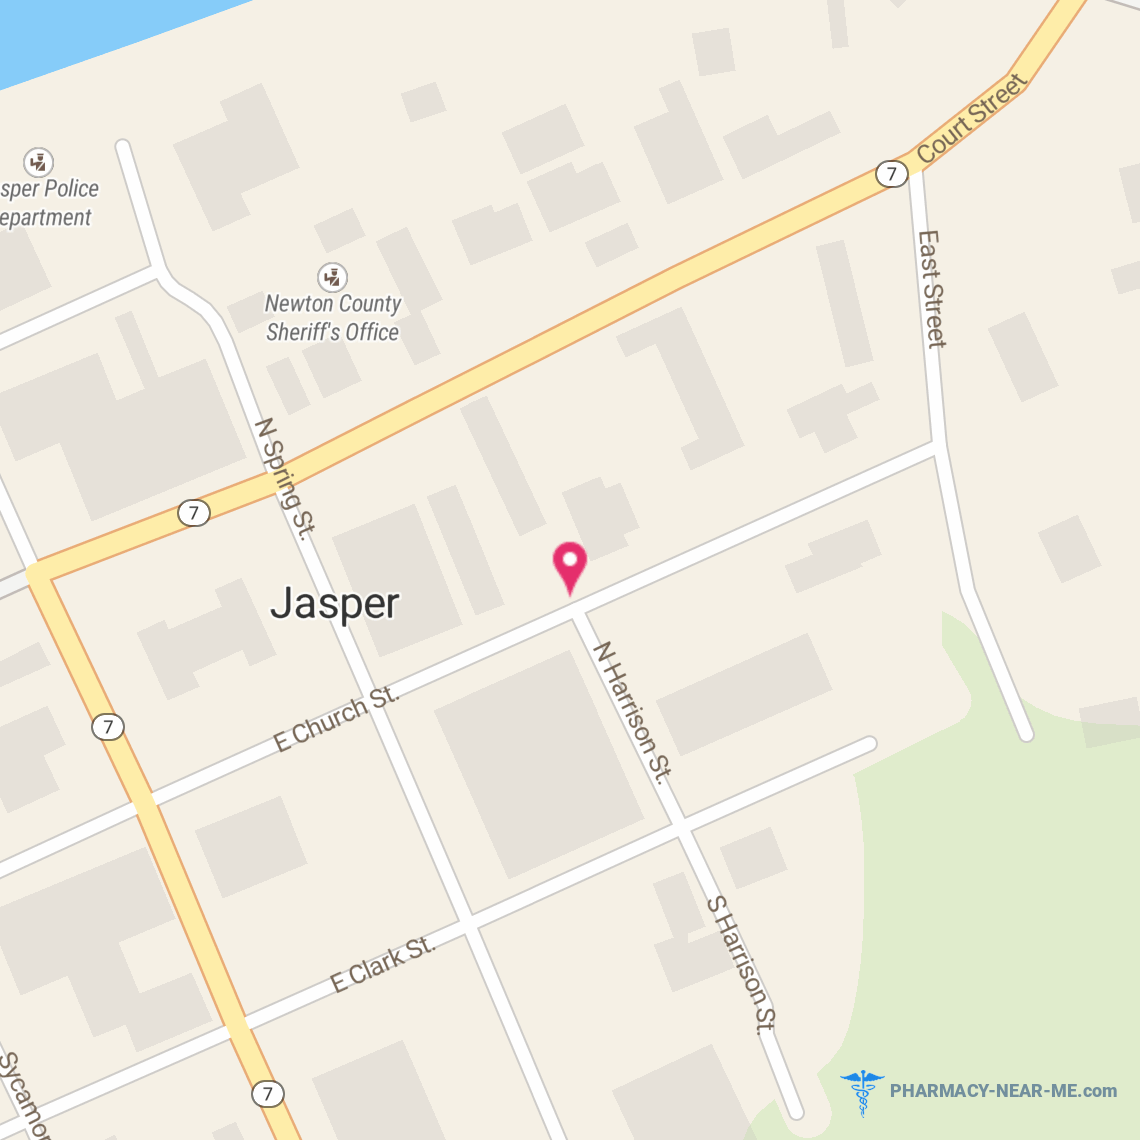 JASPER PHARMACY - Pharmacy Hours, Phone, Reviews & Information: 200 East Church Street, Jasper, Arkansas 72641, United States